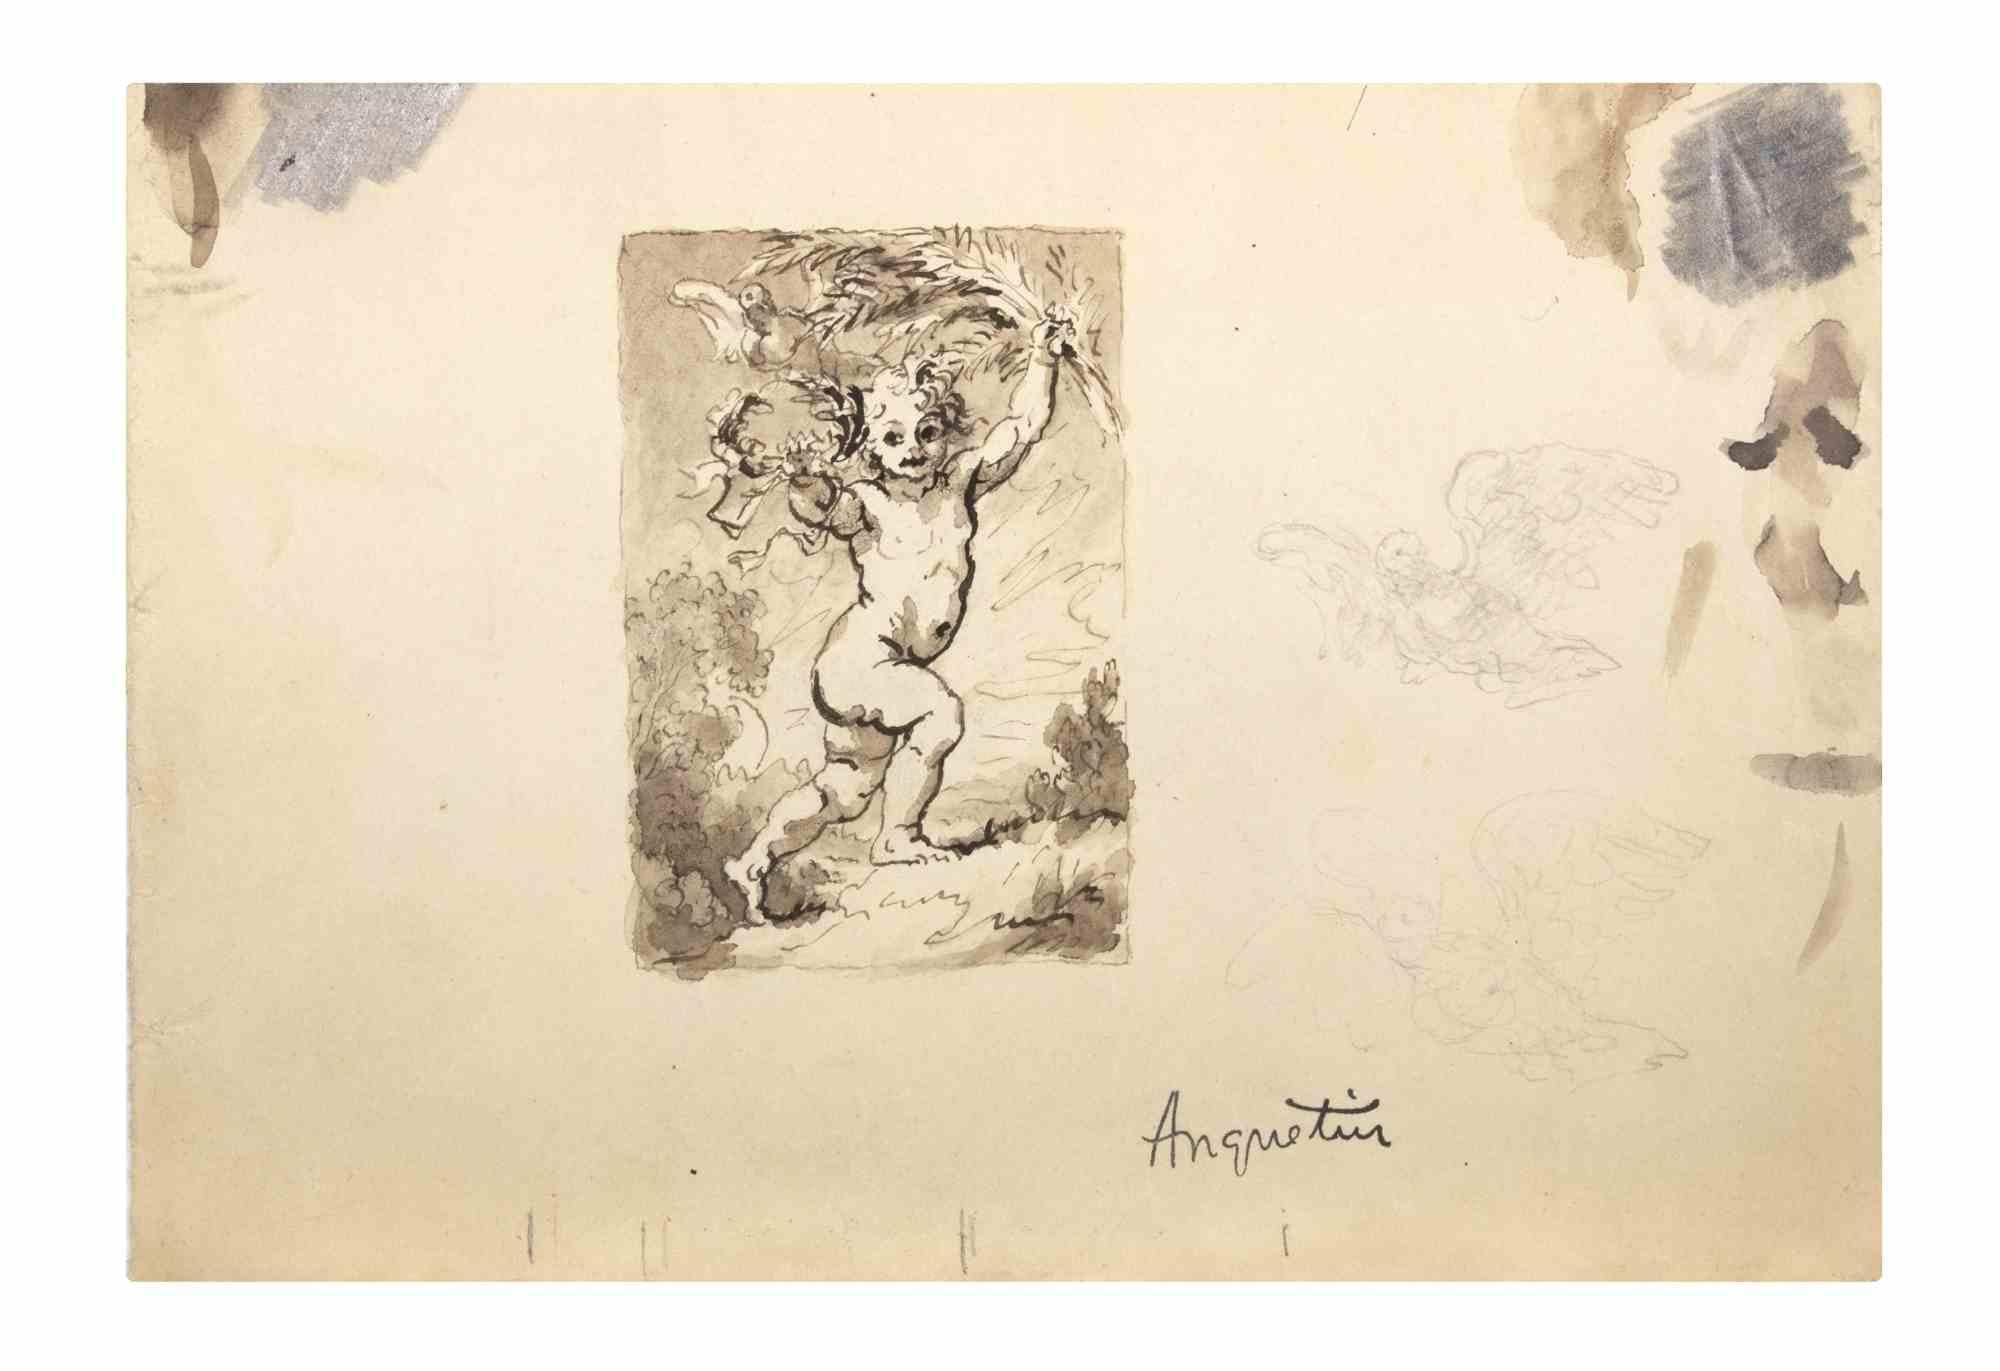 Der Engel ist eine Tuschezeichnung auf Papier, die Anfang des 20. Jahrhunderts von Louis Anquetin (1861-1932) angefertigt wurde.

Handsigniert auf der Unterseite.

Guter Zustand mit leichten Stockflecken.

Louis Émile Anquetin (26. Januar 1861 - 19.